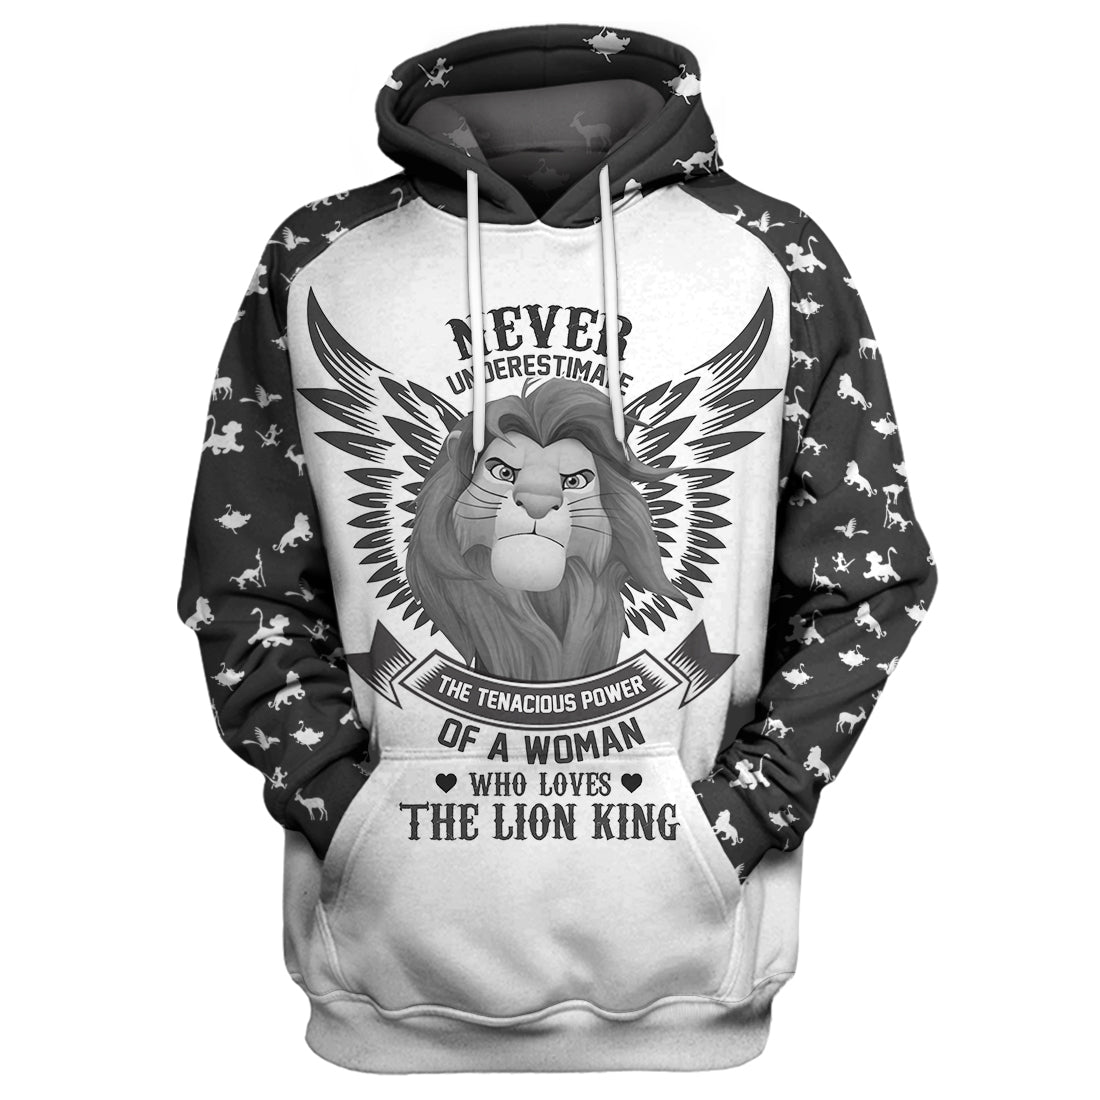 Unifinz DN LK T-shirt Never Underestimate Lion King T-shirt Awesome DN LK Hoodie Sweater Tank 2022